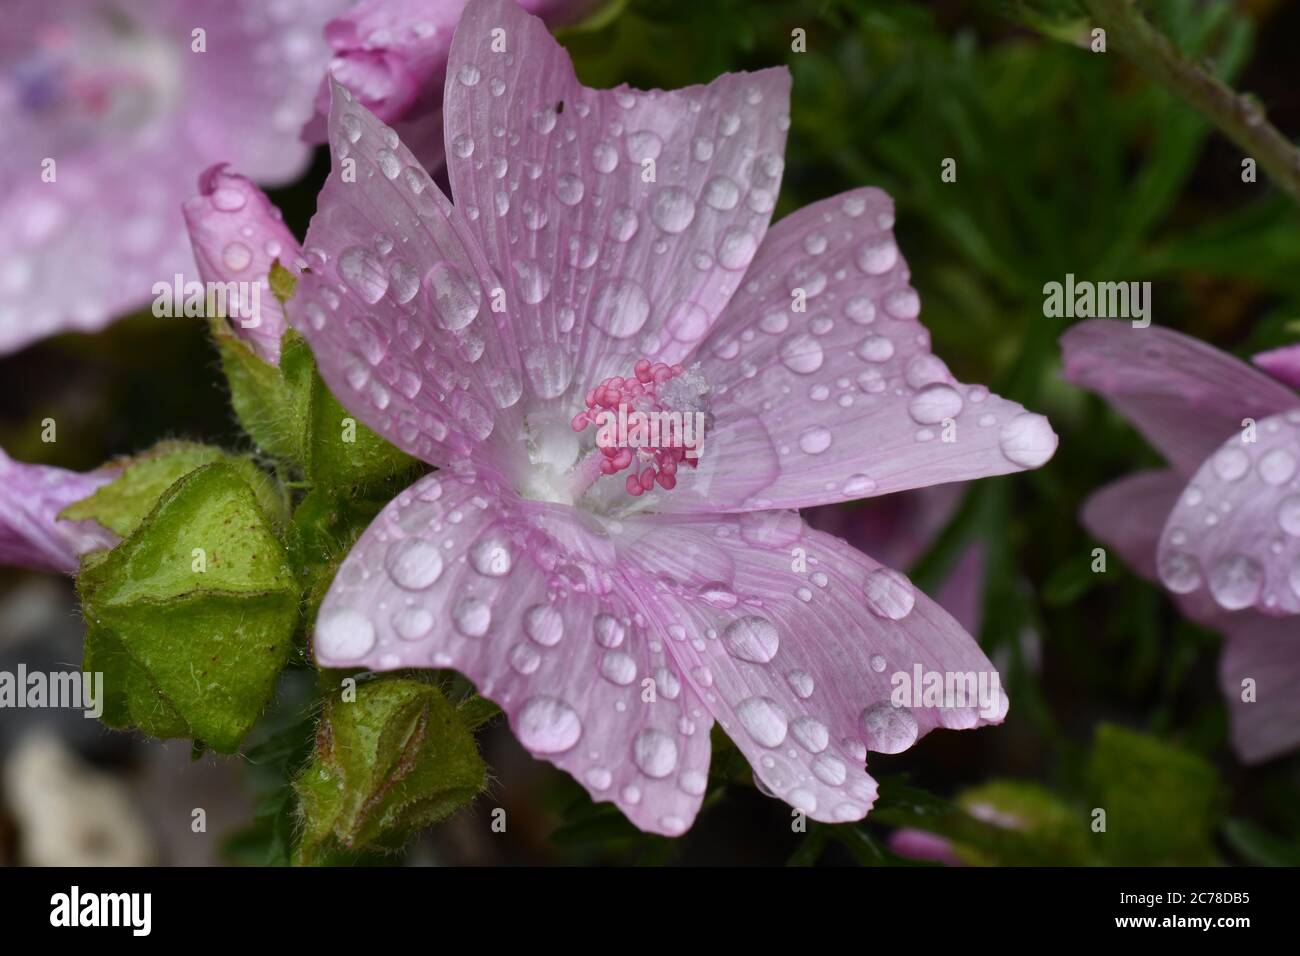 Primo piano di un mallow Musk (Malva moschata) fiore coperto di gocce d'acqua dopo una doccia a pioggia con semi cialde vicino.Frome. Somerset.UK Foto Stock